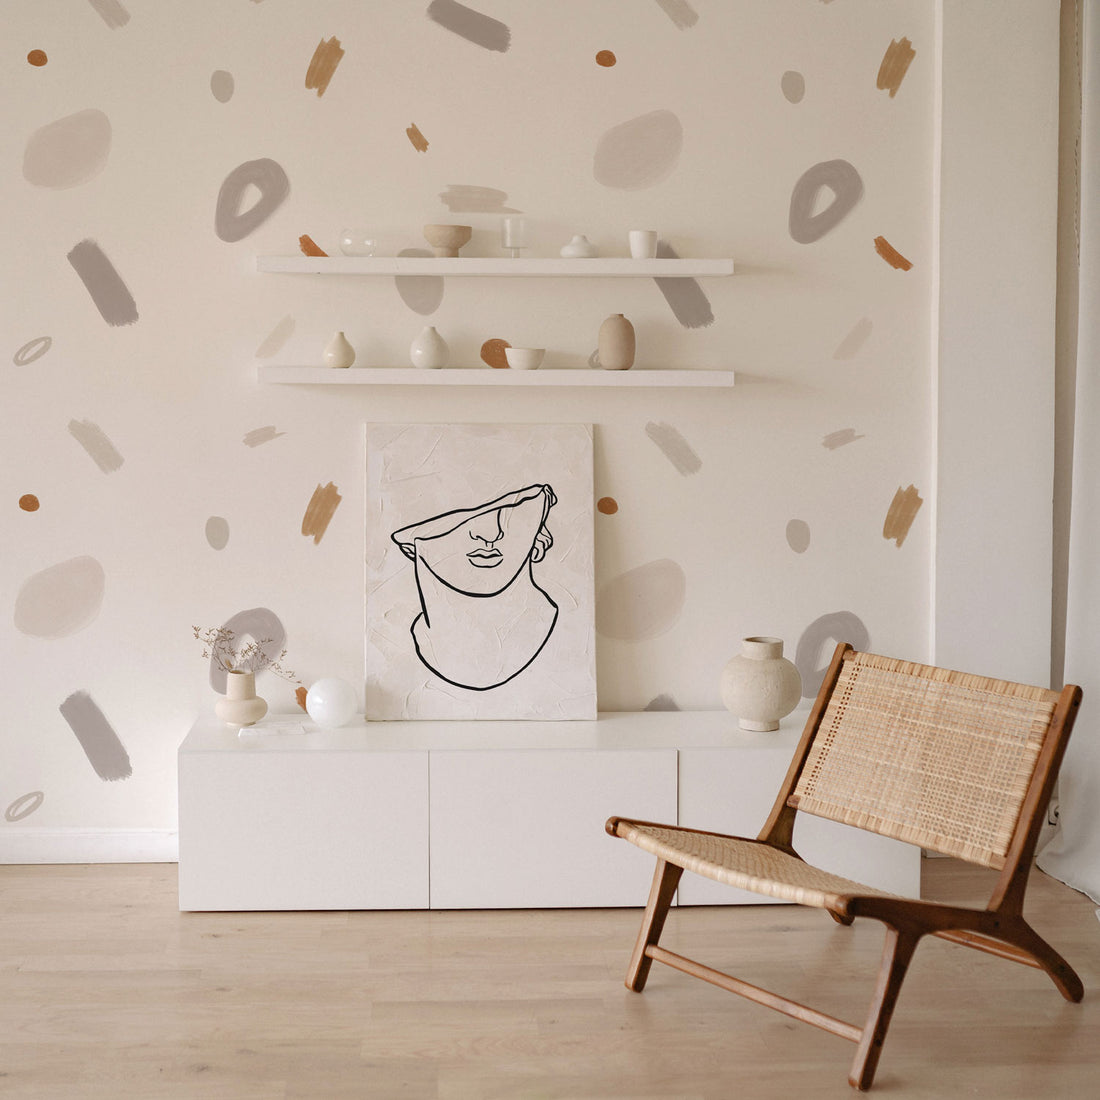 living room retro inspired geometric neutral shapes wallpaper design